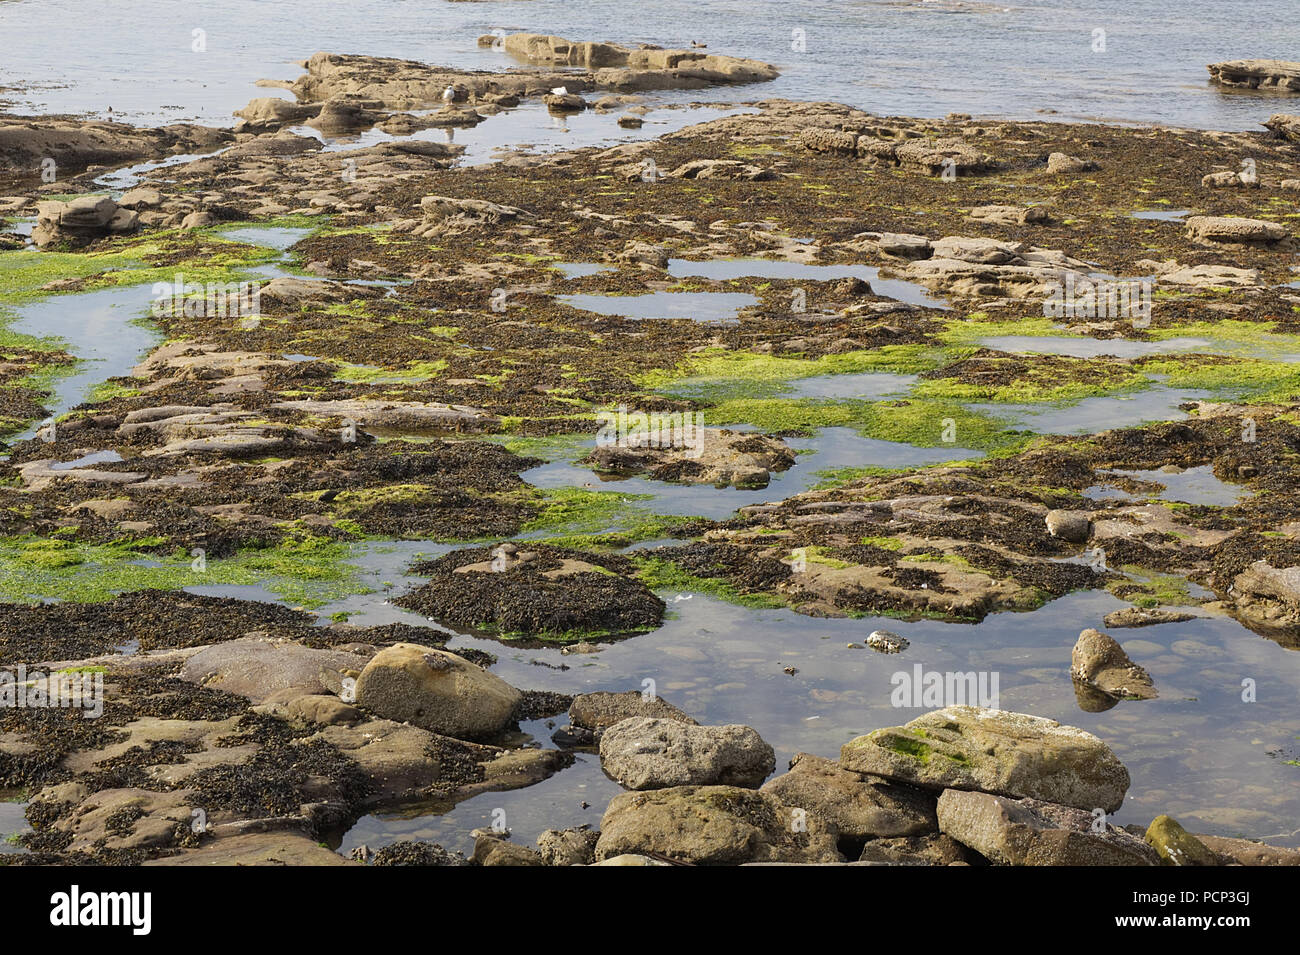 algae and seaweed on rocks in the ocean Stock Photo